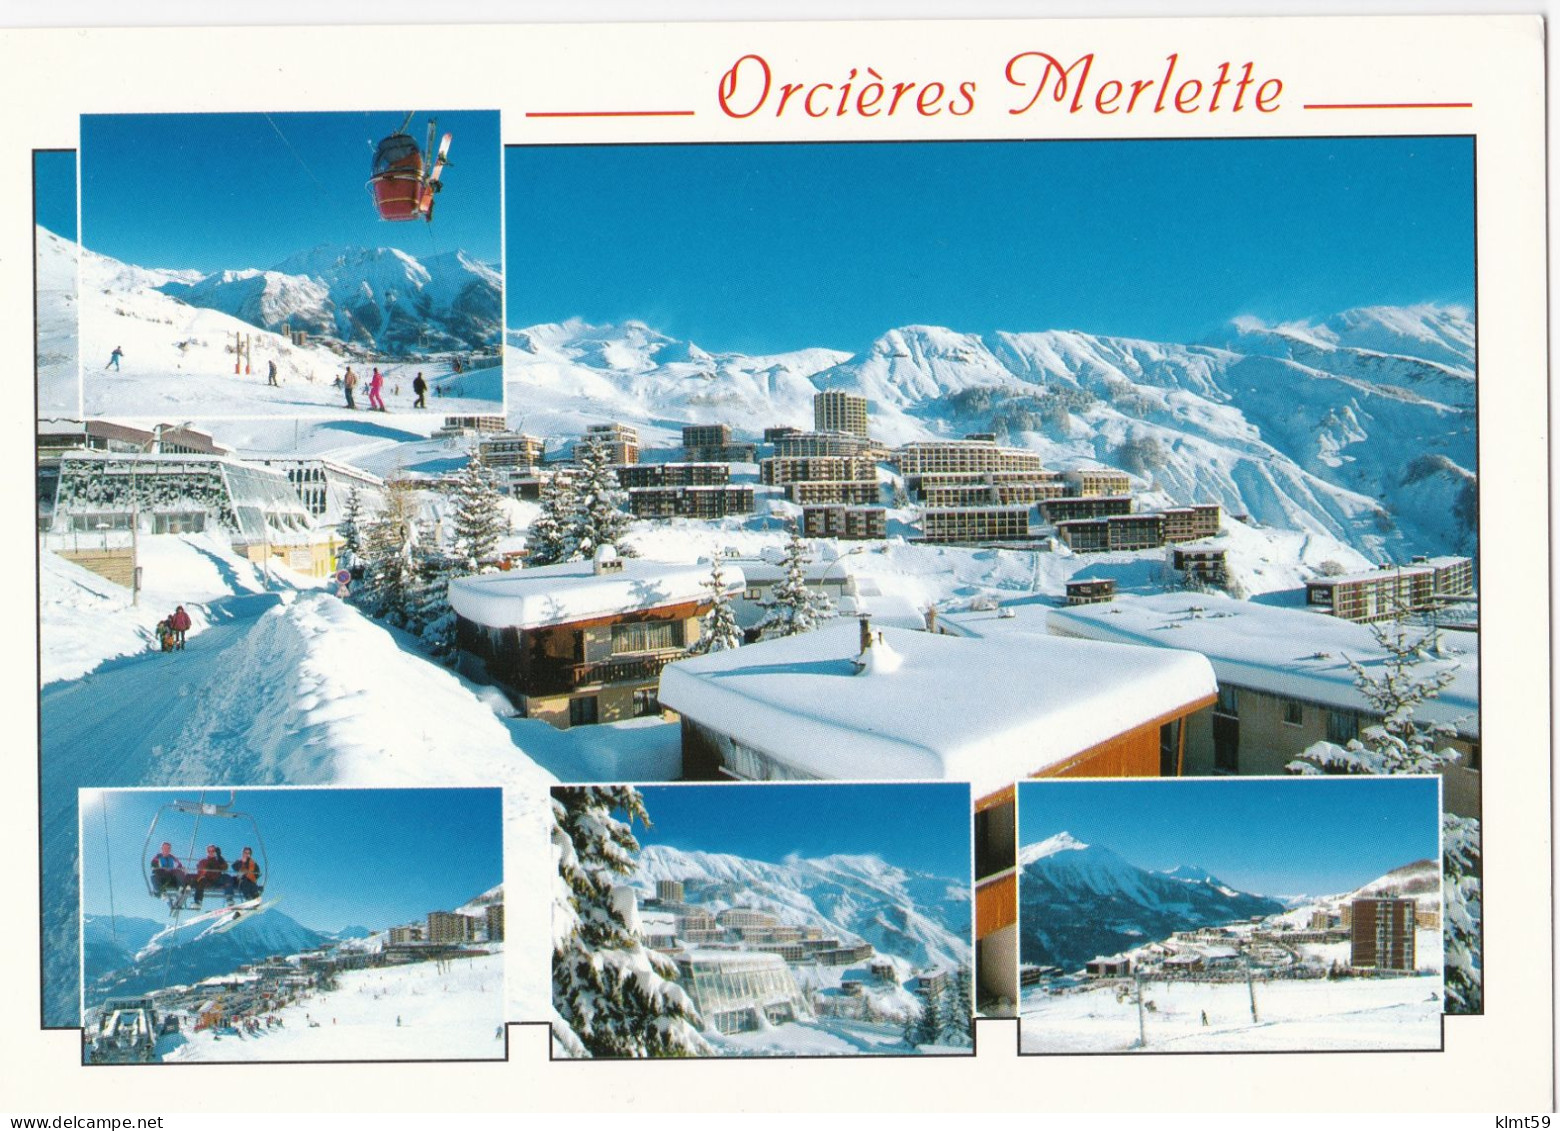 Orcières Merlette - Le Champsaur - Orcieres